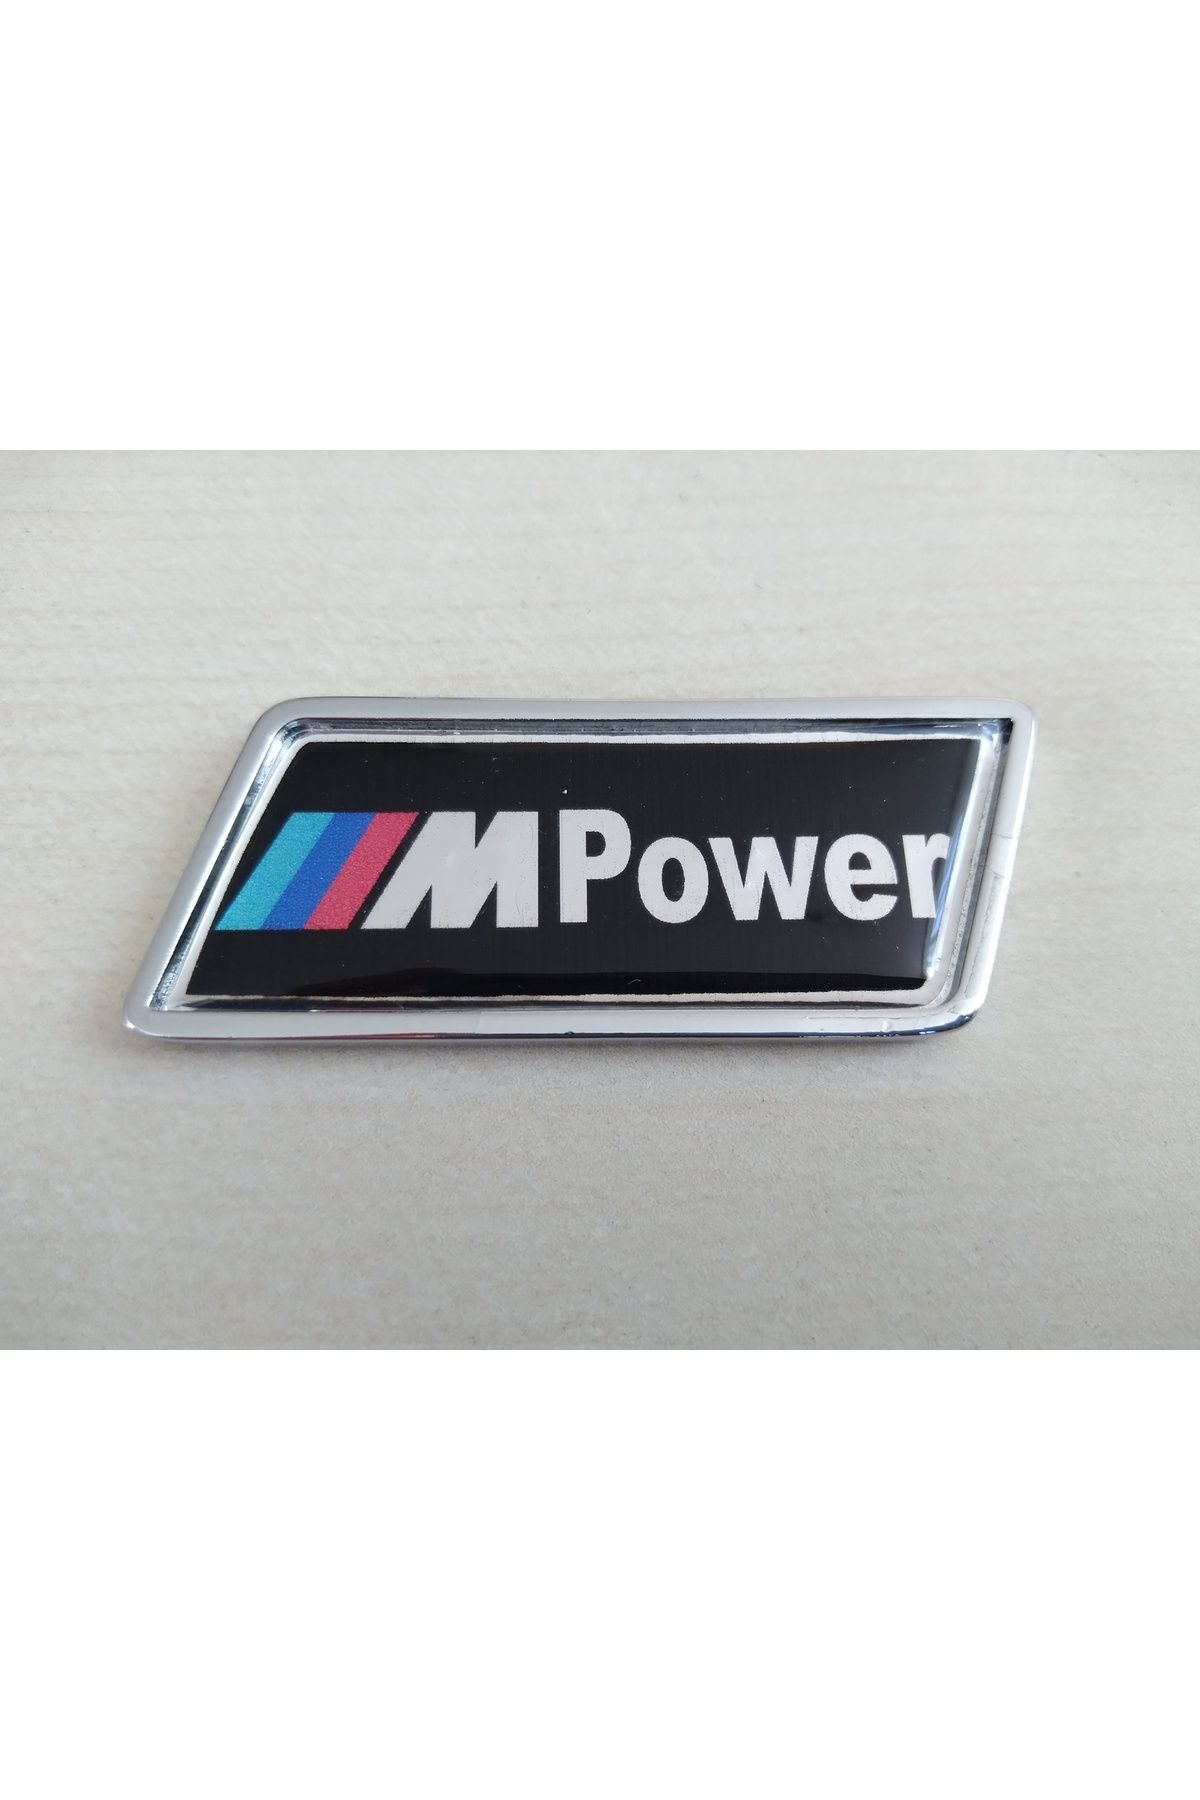 Sportline Sport 3m Power Yazısı - Bmw 3m Çamurluk Logosu - Bmw 3m Bagaj Logosu Bmw 3m Arması Bmw 3m Etiketi